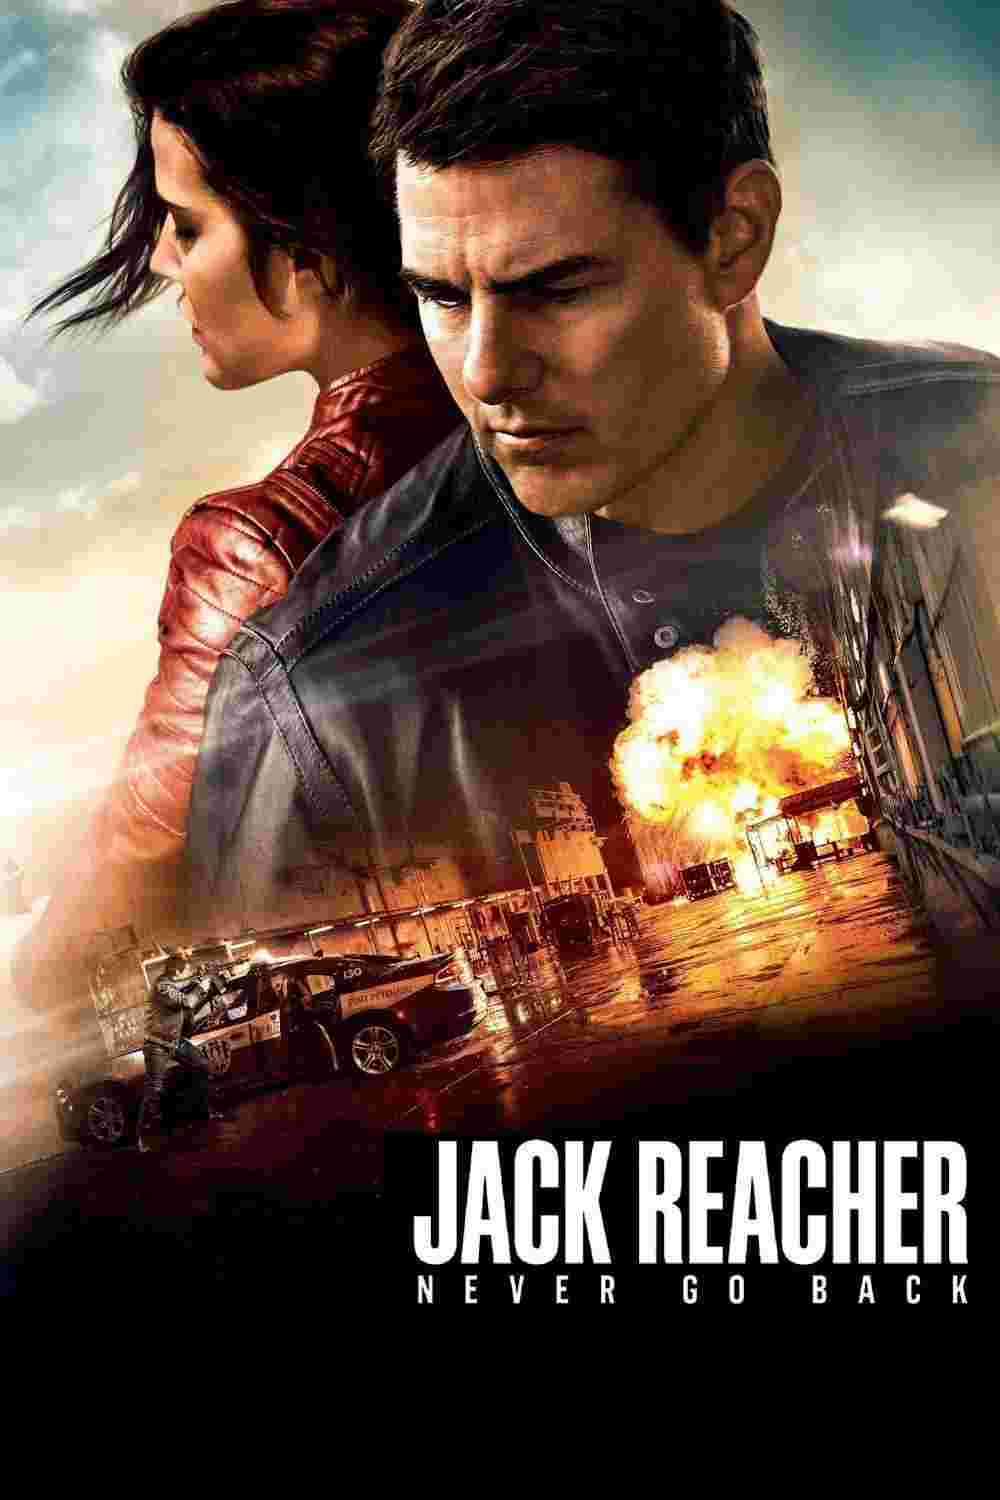 Jack Reacher: Never Go Back (2016) Tom Cruise